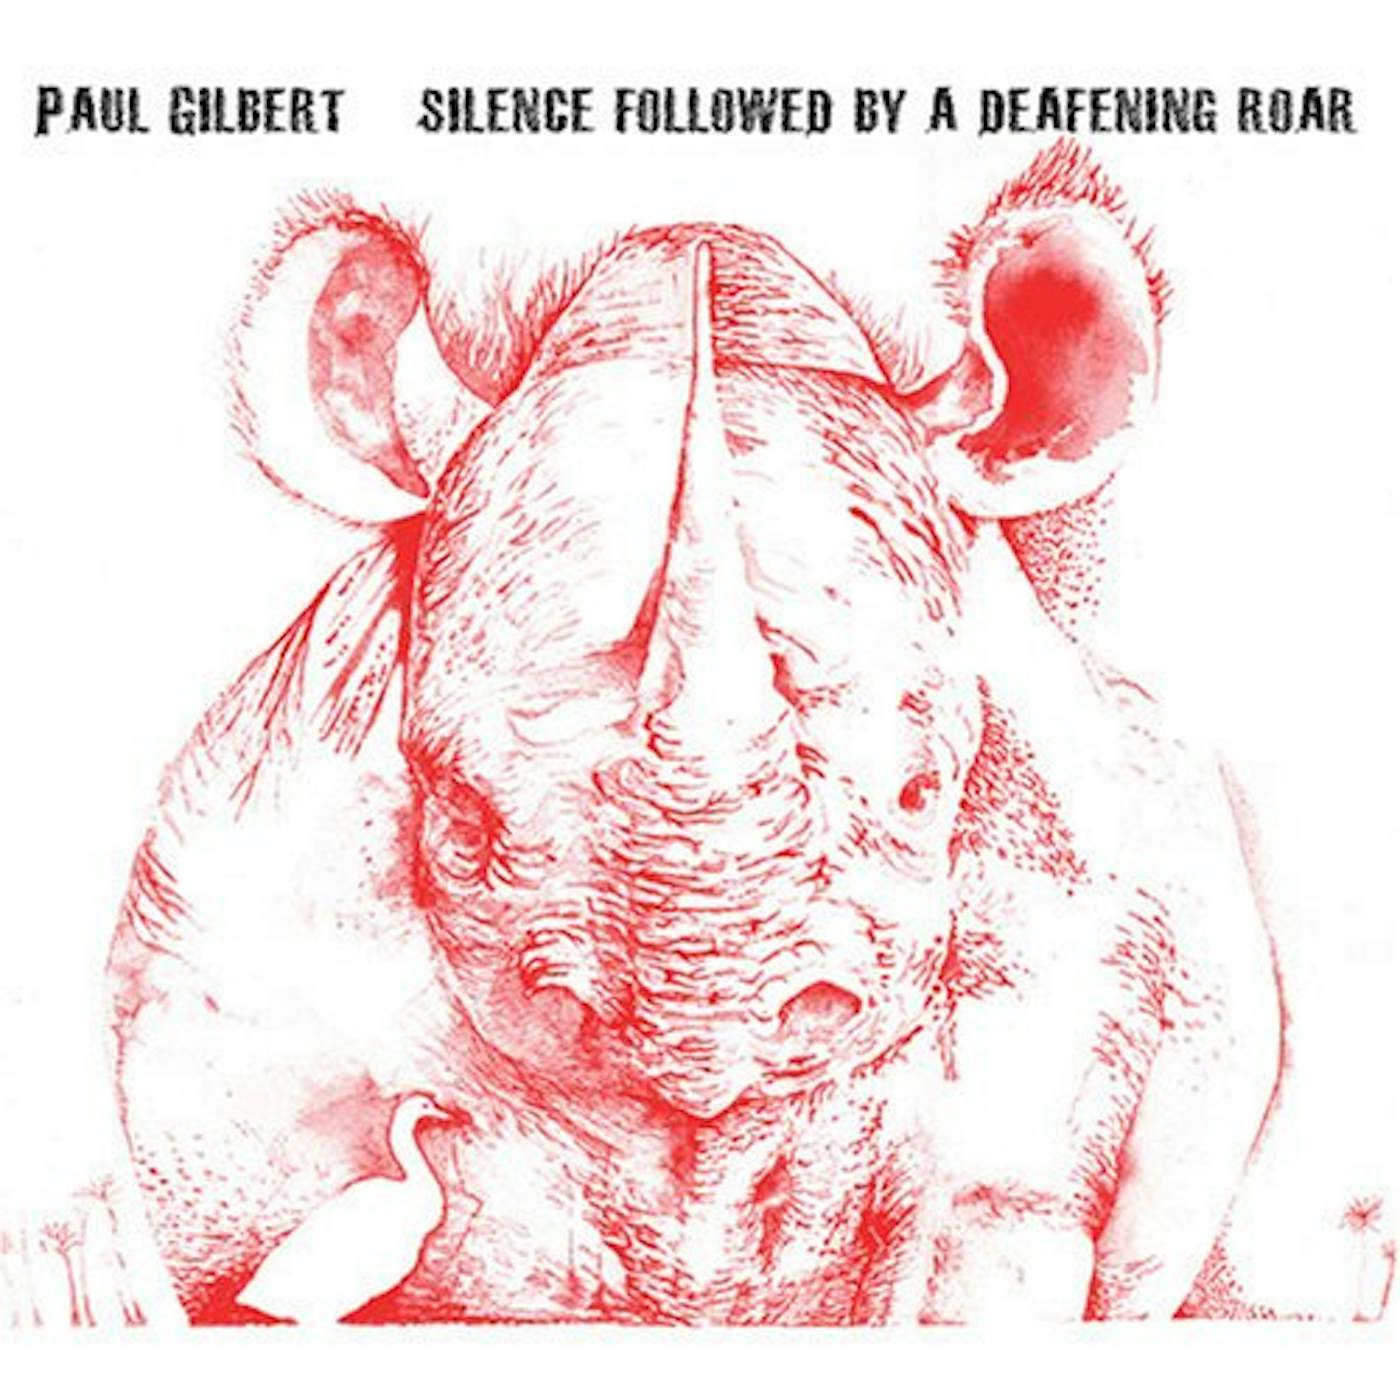 Paul Gilbert SILENCE FOLLOWED BY A DEAFENING ROAR CD